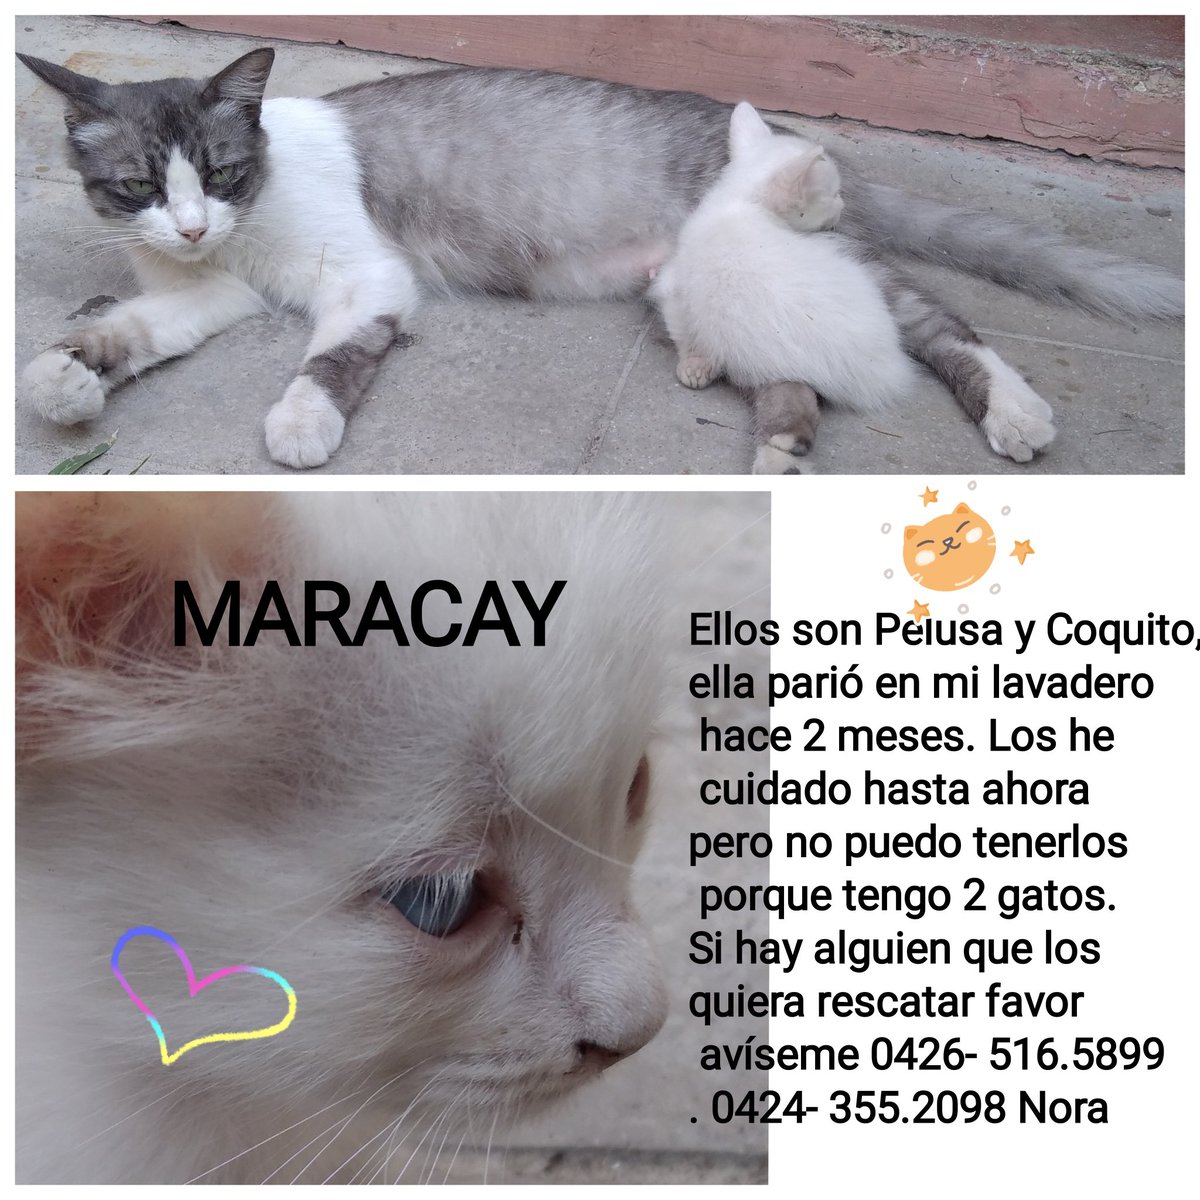 Hermosos gatitos buscando un hogar responsable, Maracay RP @Norachepina: Por favor ayúdenme a difundir para encontrar un hogar para estos gatitos